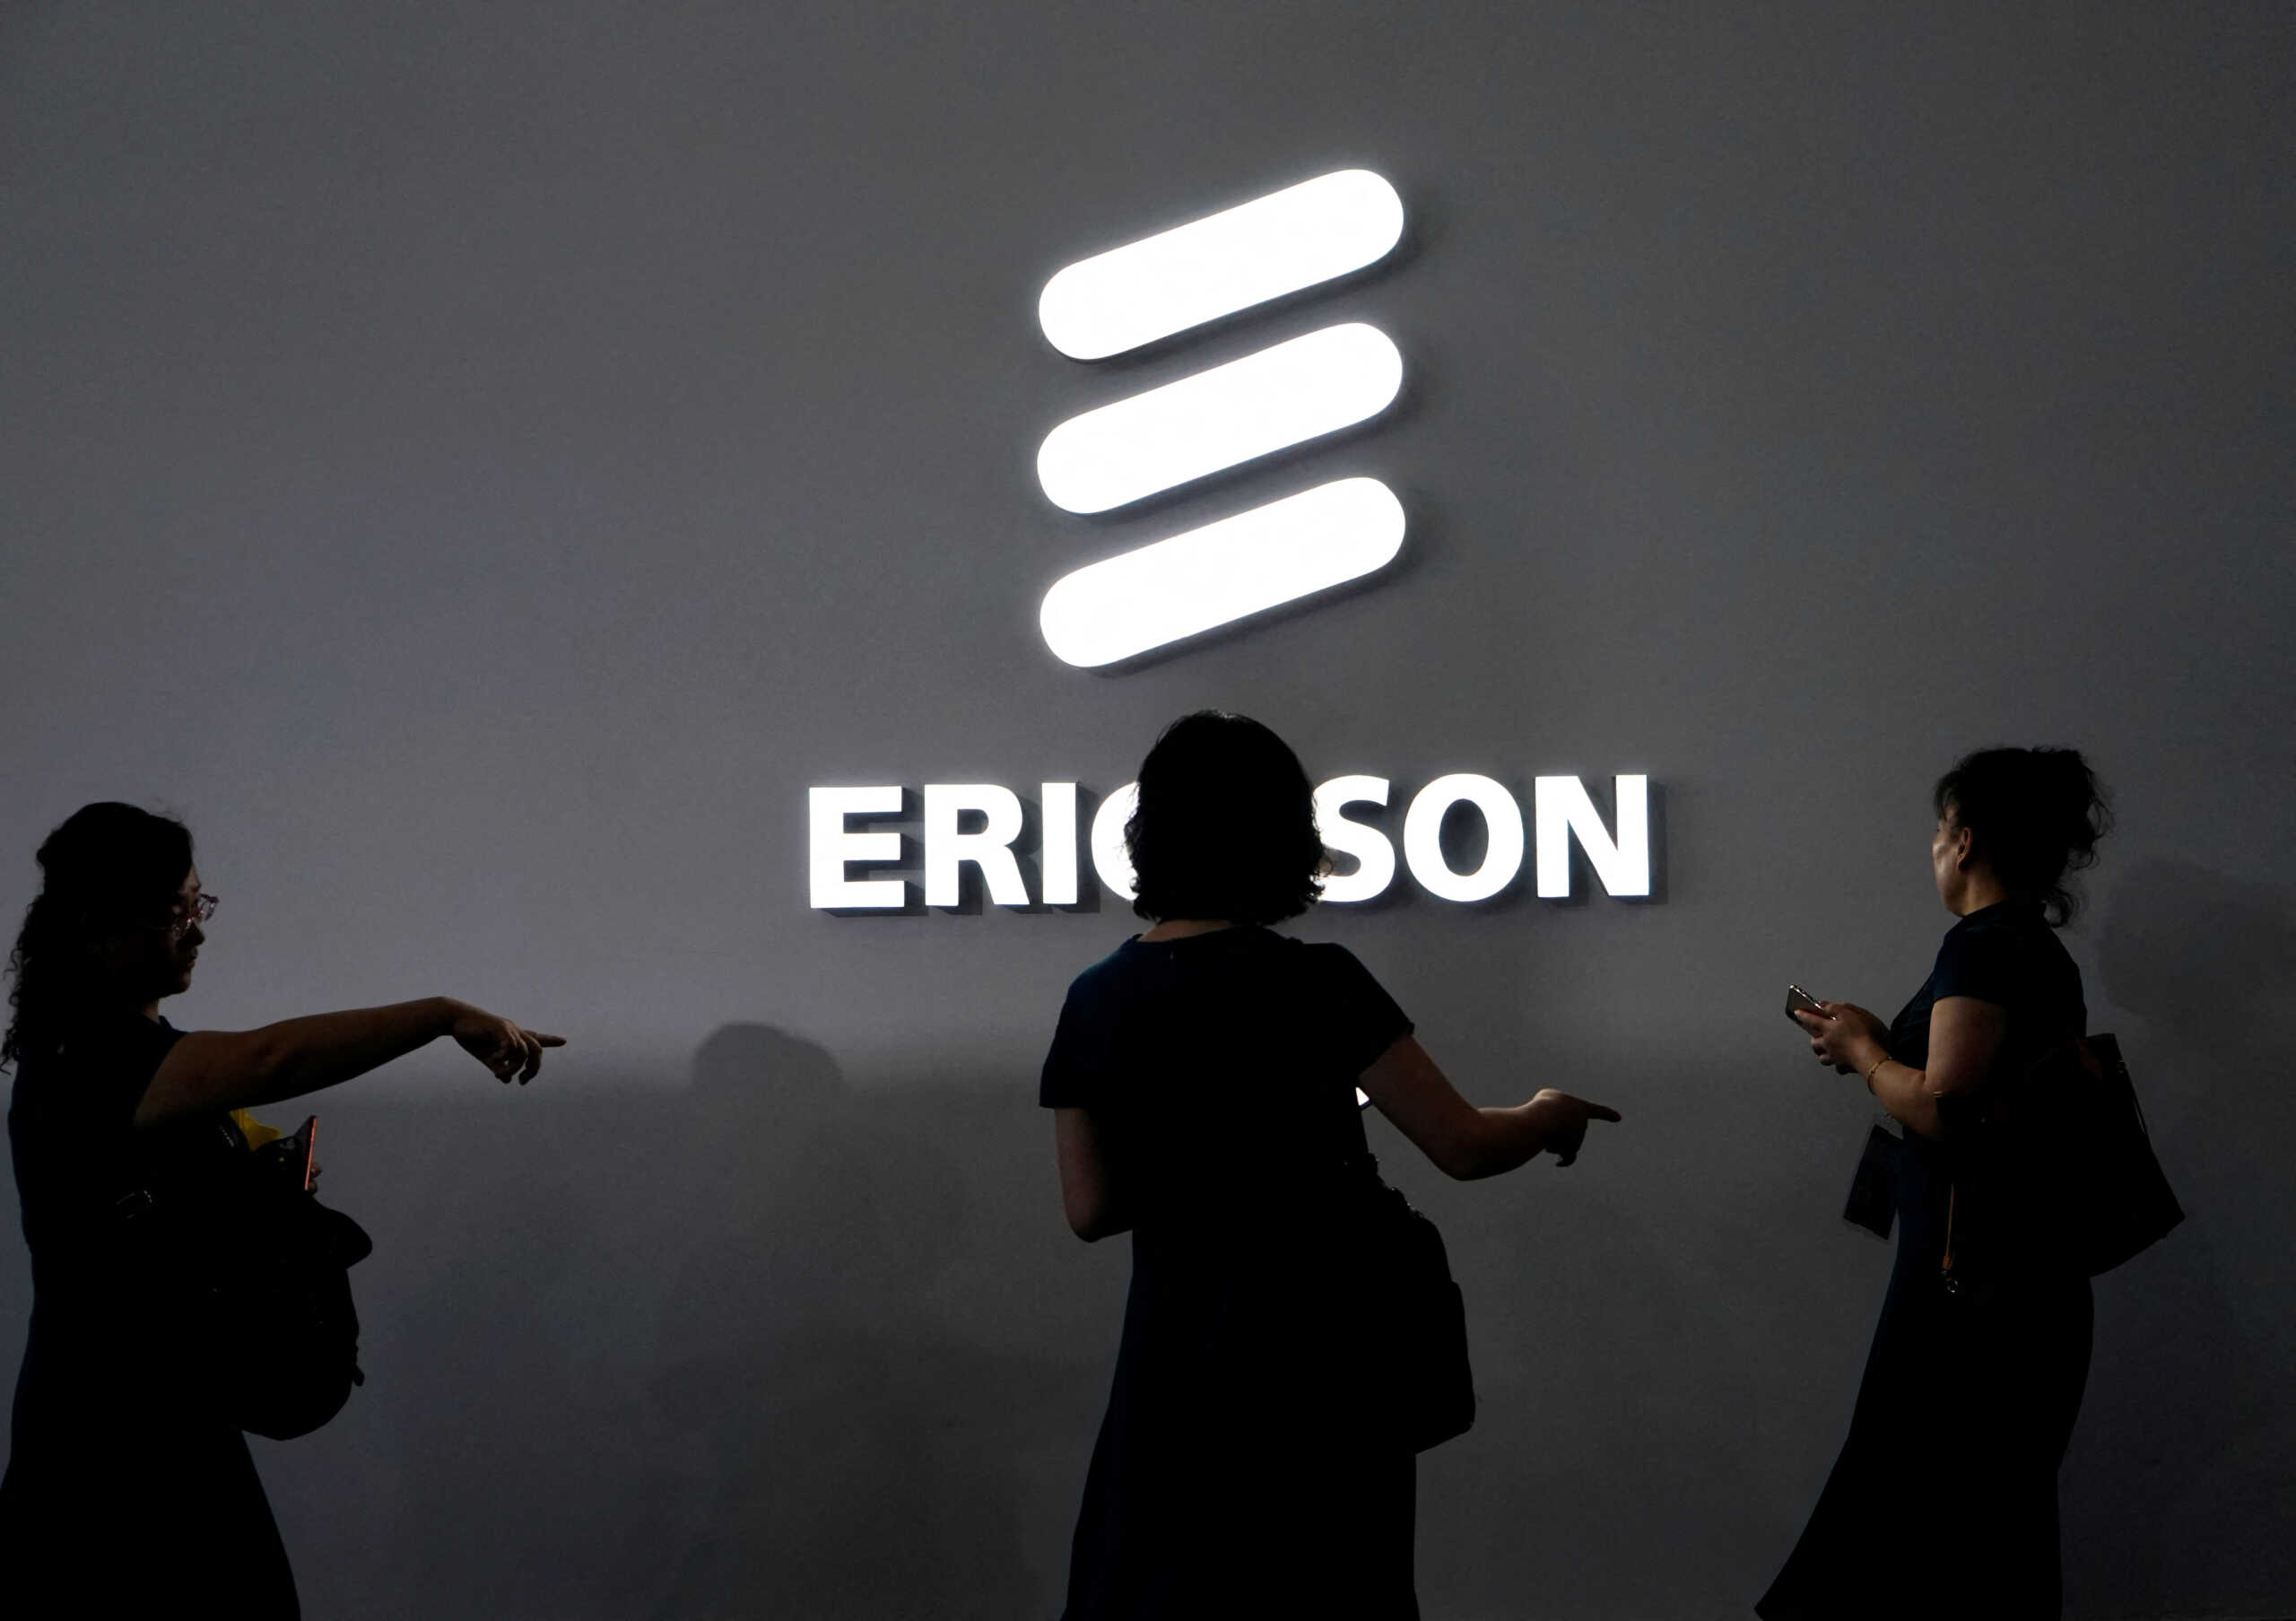 Σουηδία: Η Ericsson θα περικόψει 8.500 θέσεις εργασίας παγκοσμίως το 2023 και το 2024